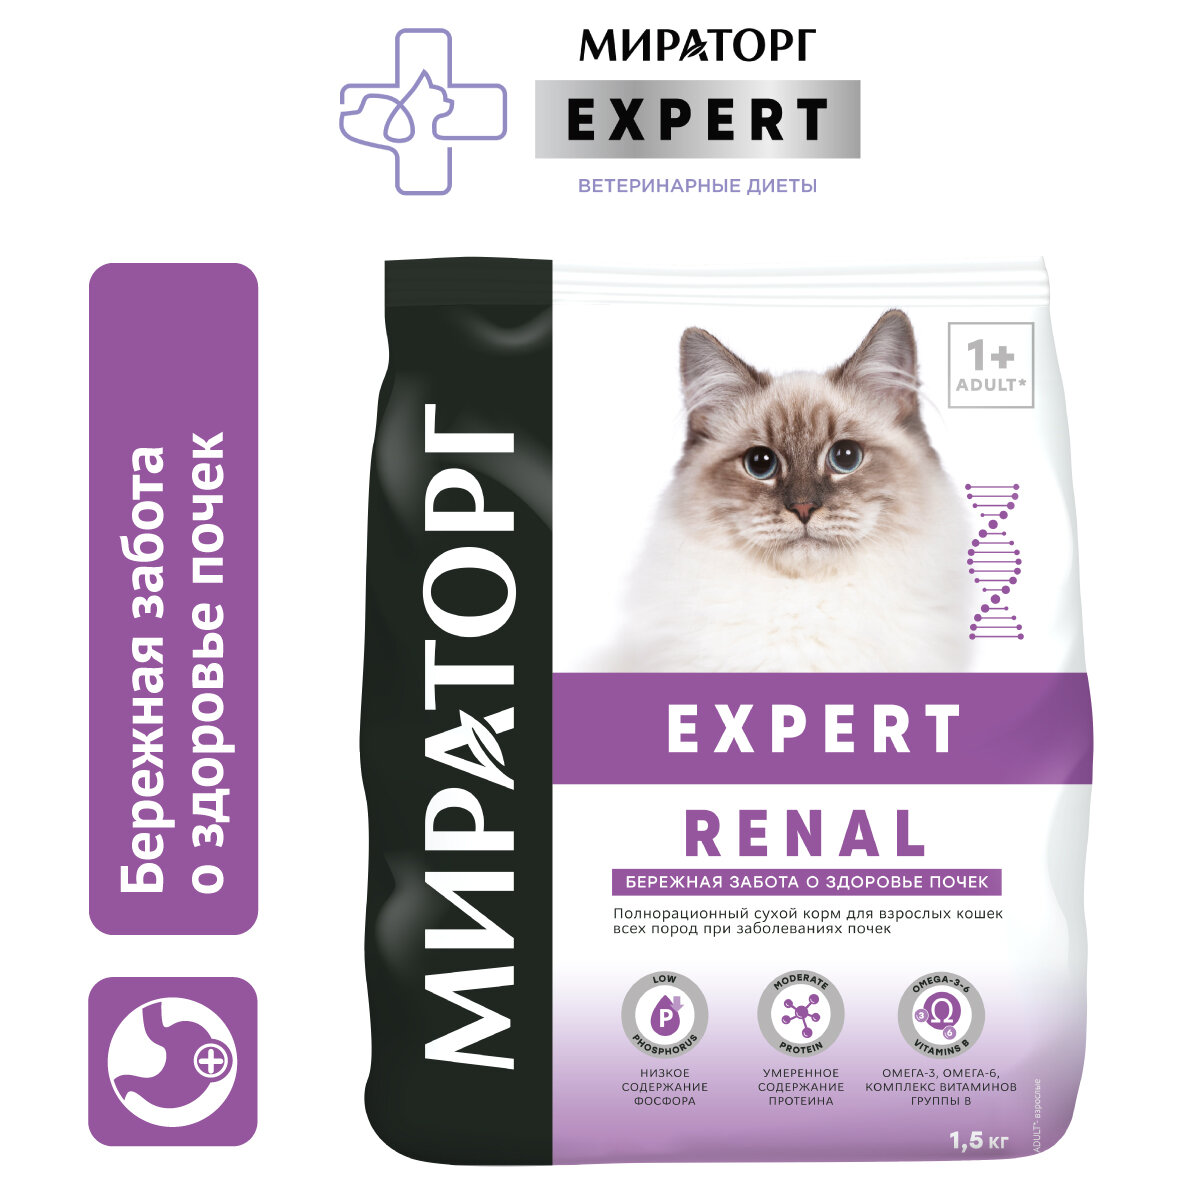 Мираторг 1,5кг корм для кошек «Бережная забота о здоровье почек» Expert